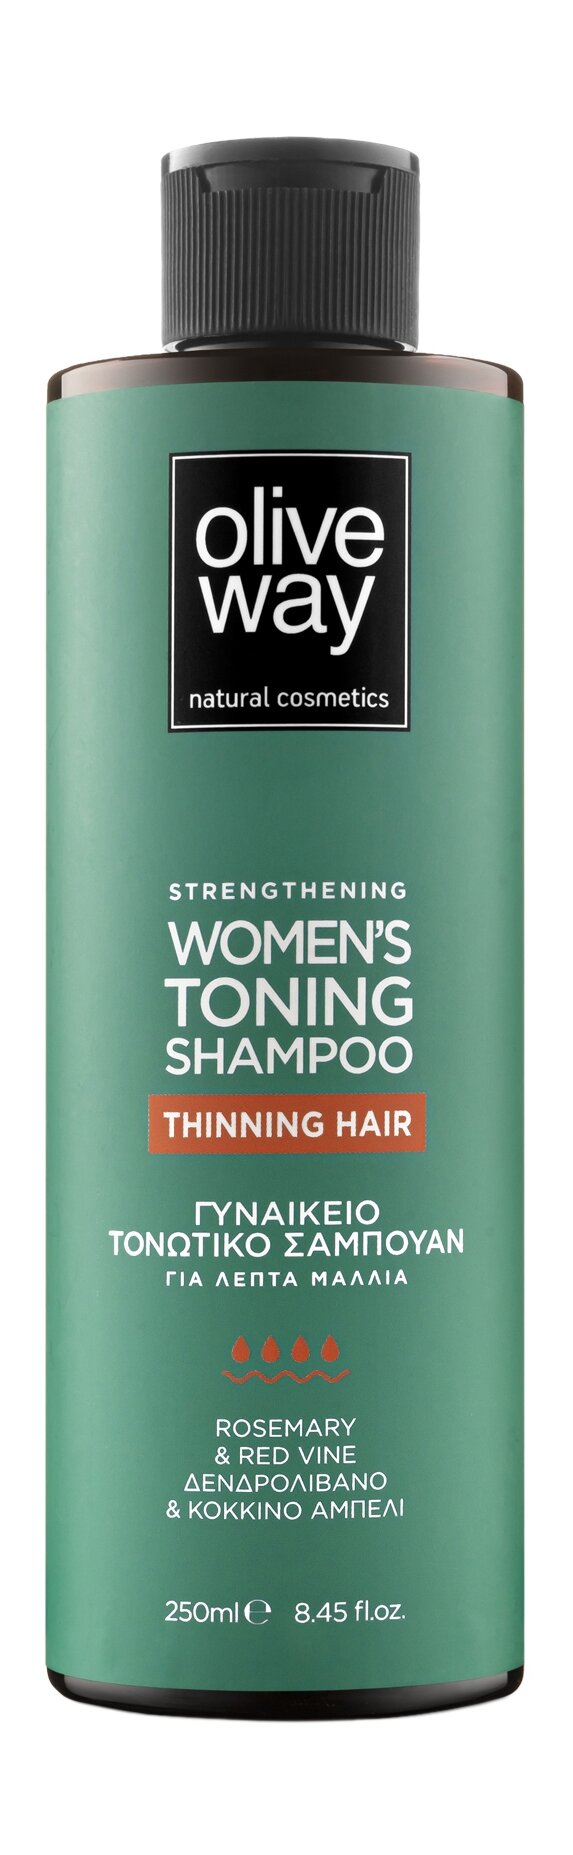 OLIVEWAY Strengthening Women's Toning Shampoo Шампунь укрепляющий для тонких волос, 250 мл